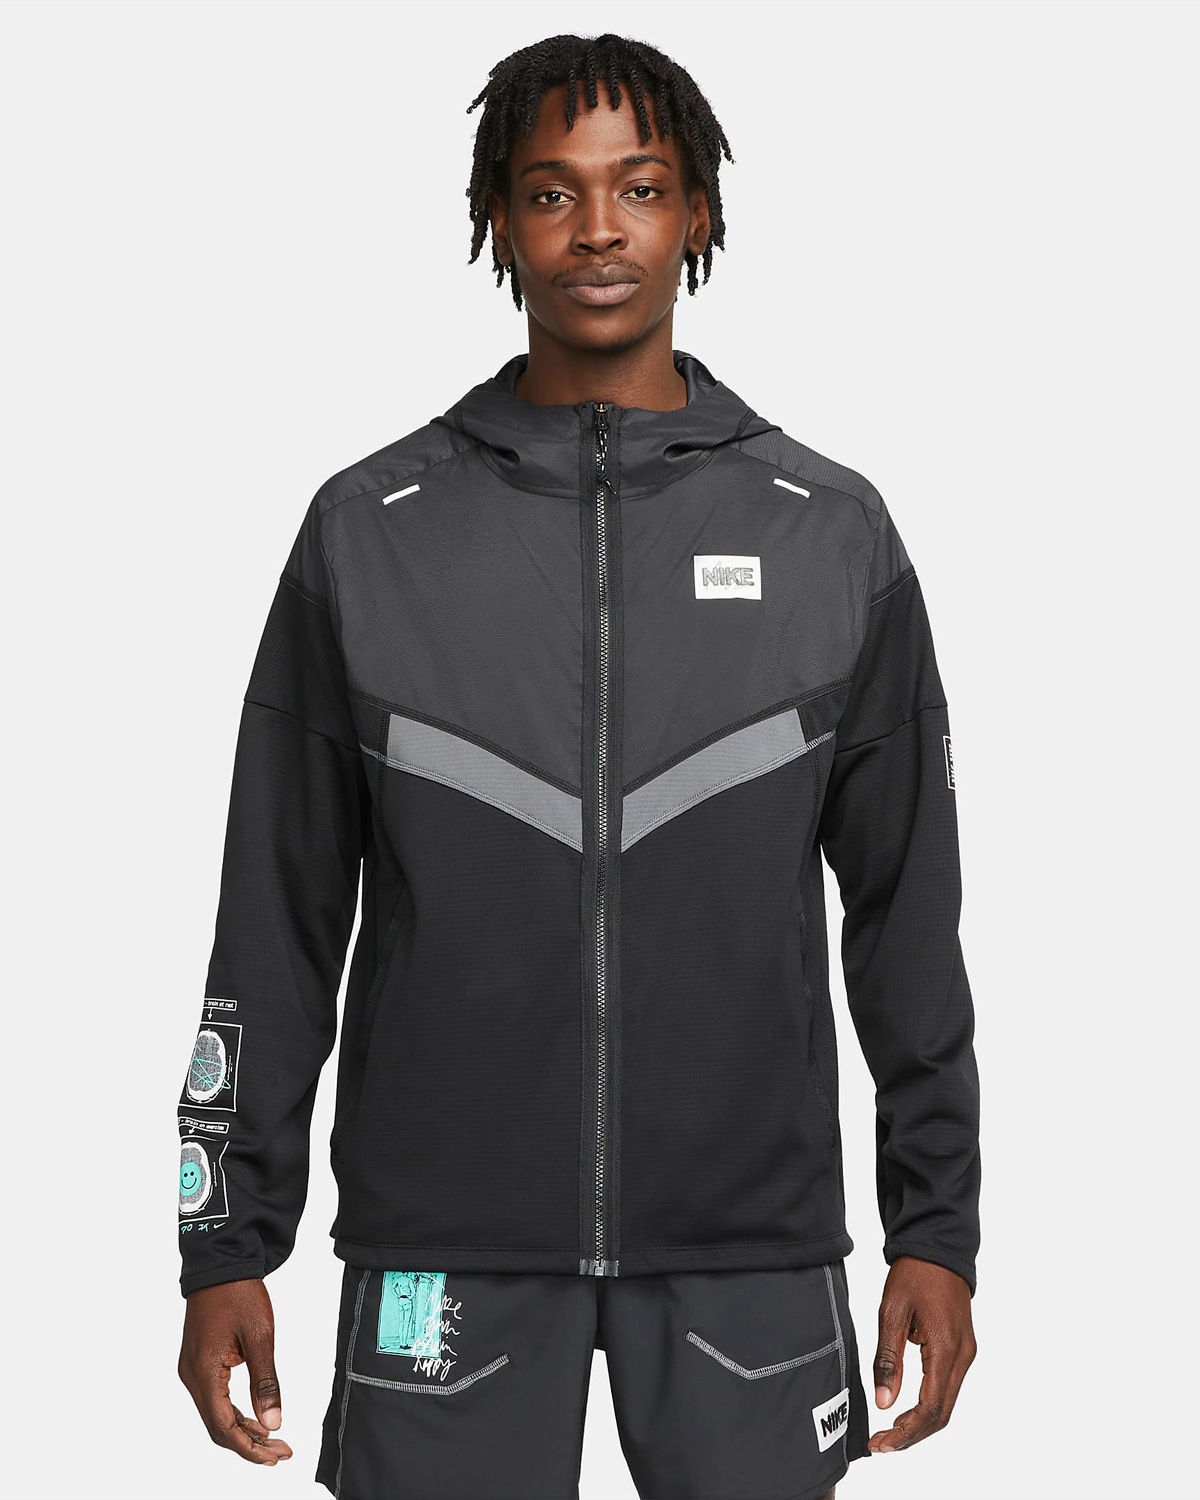 Nike-Windrunner-Jacket-Iron-Grey